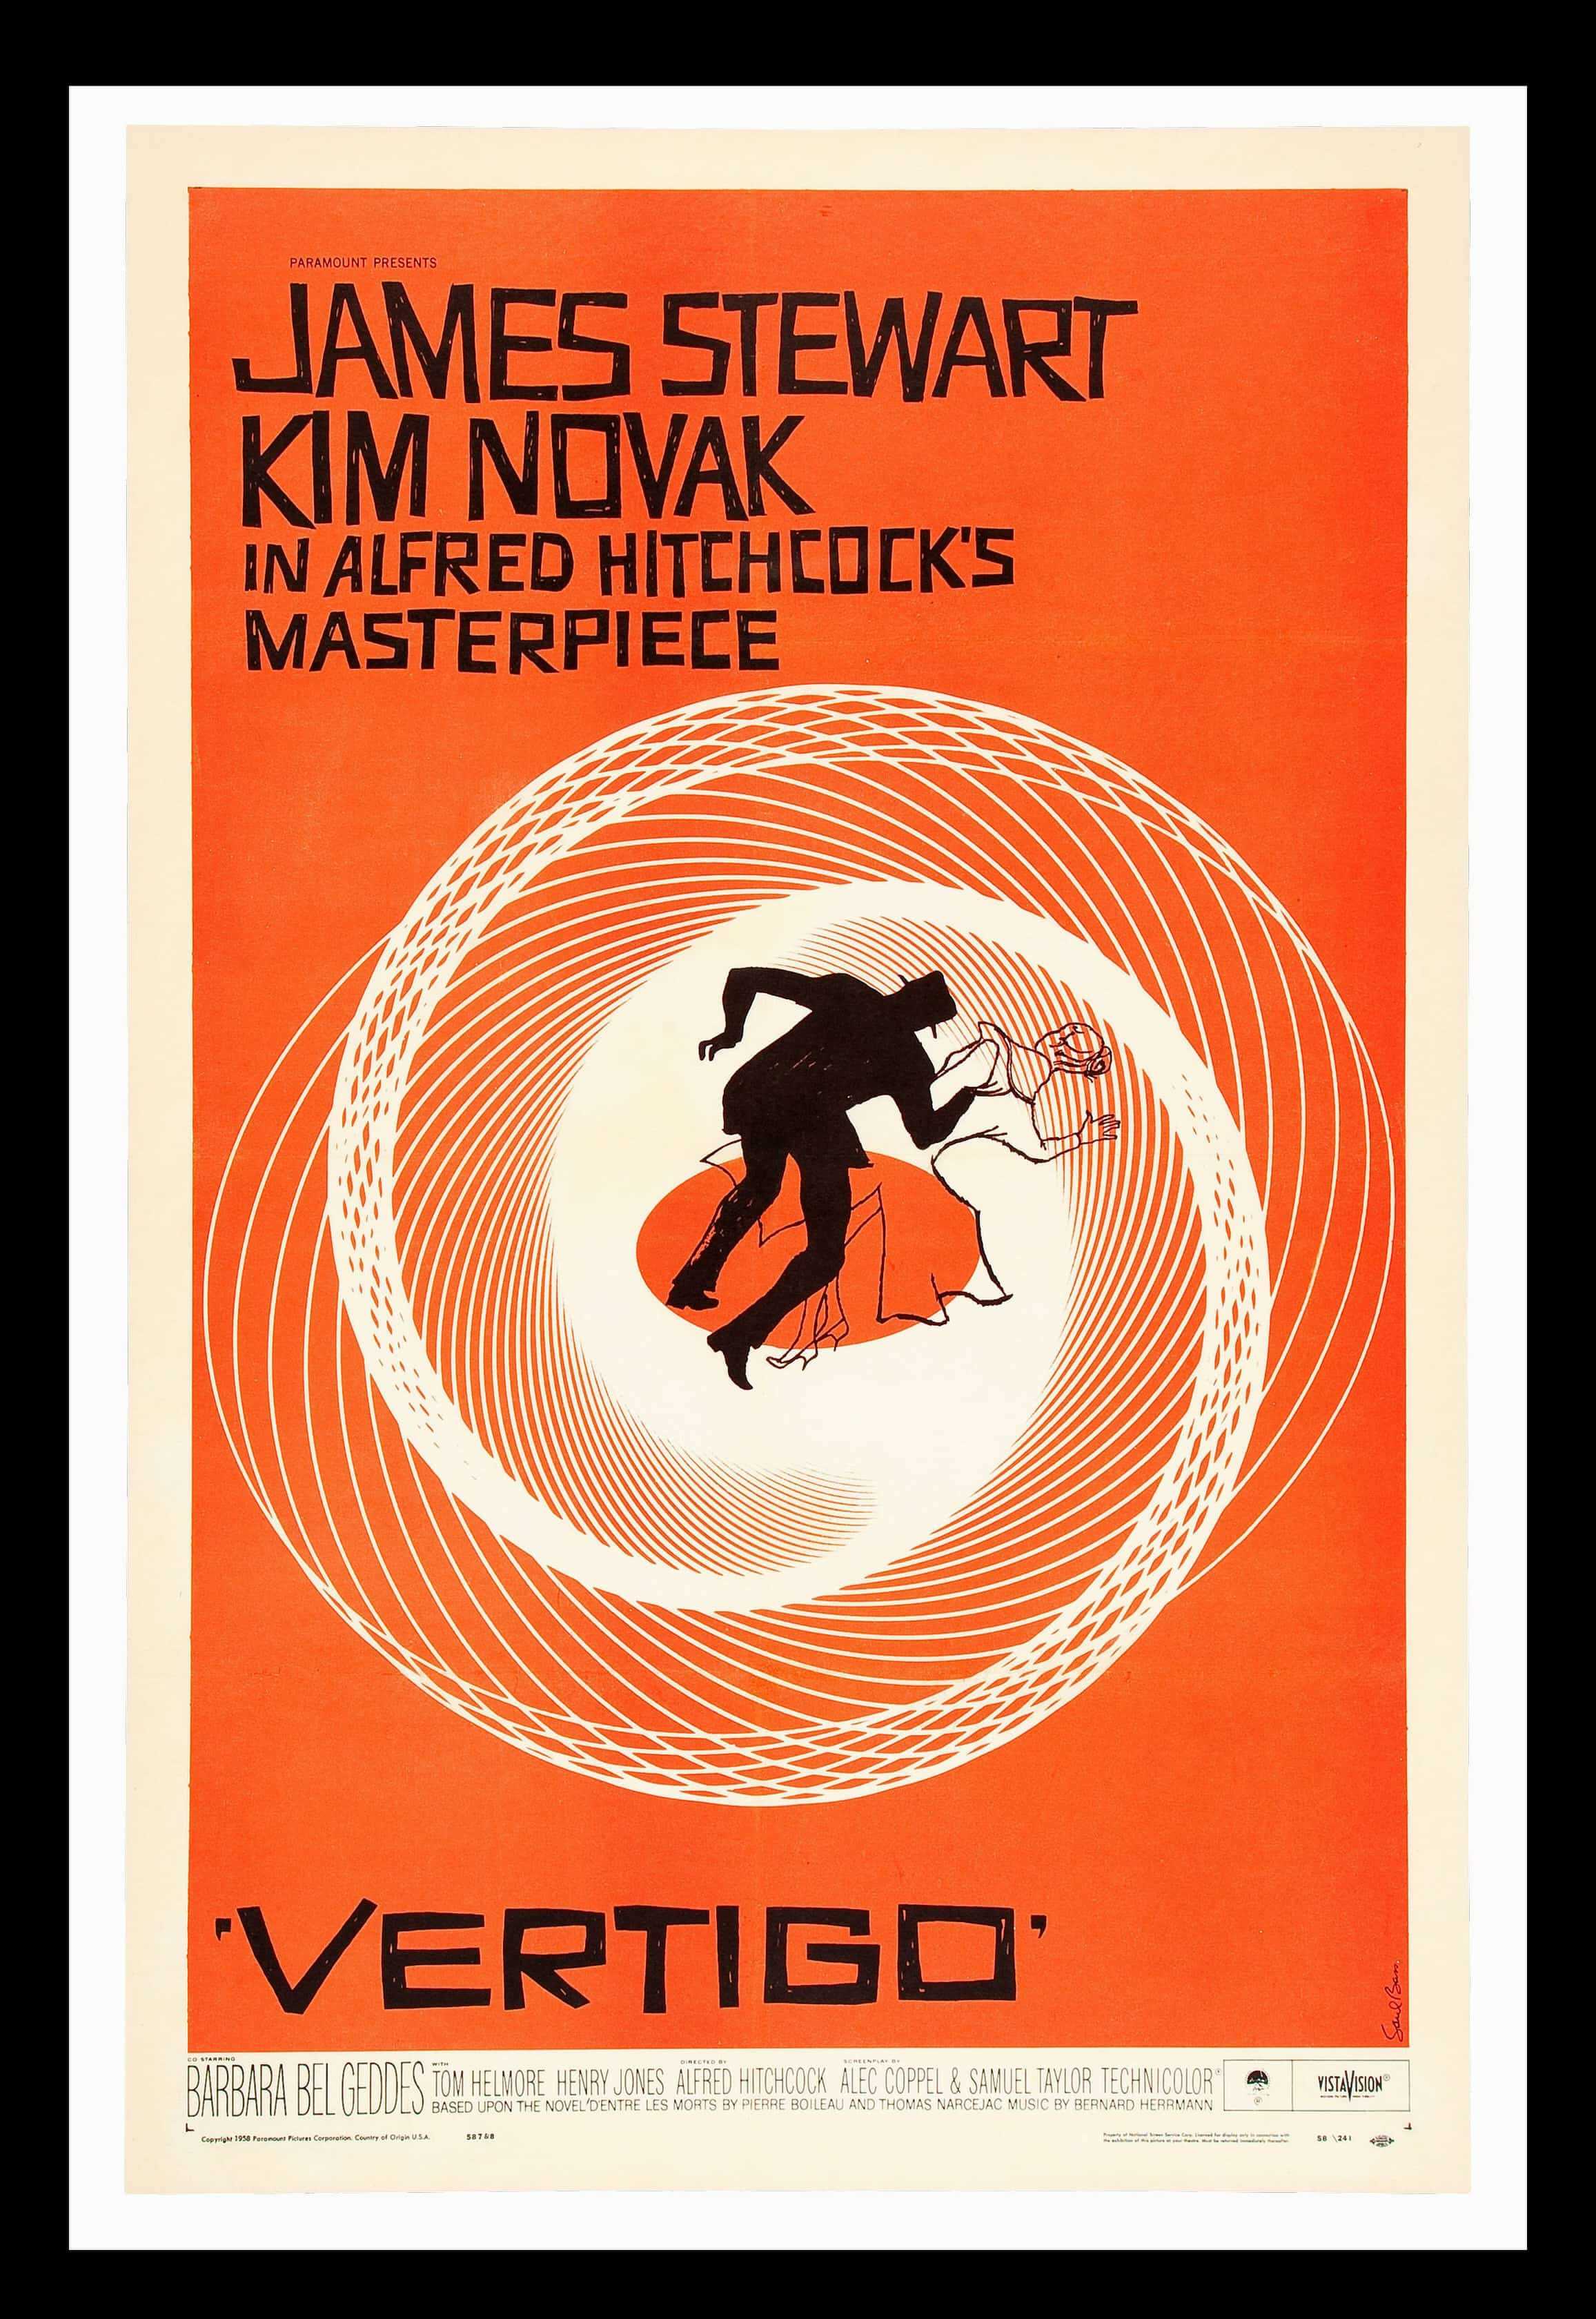 Retro Film Poster - Vertigo by Alfred Hitchcock